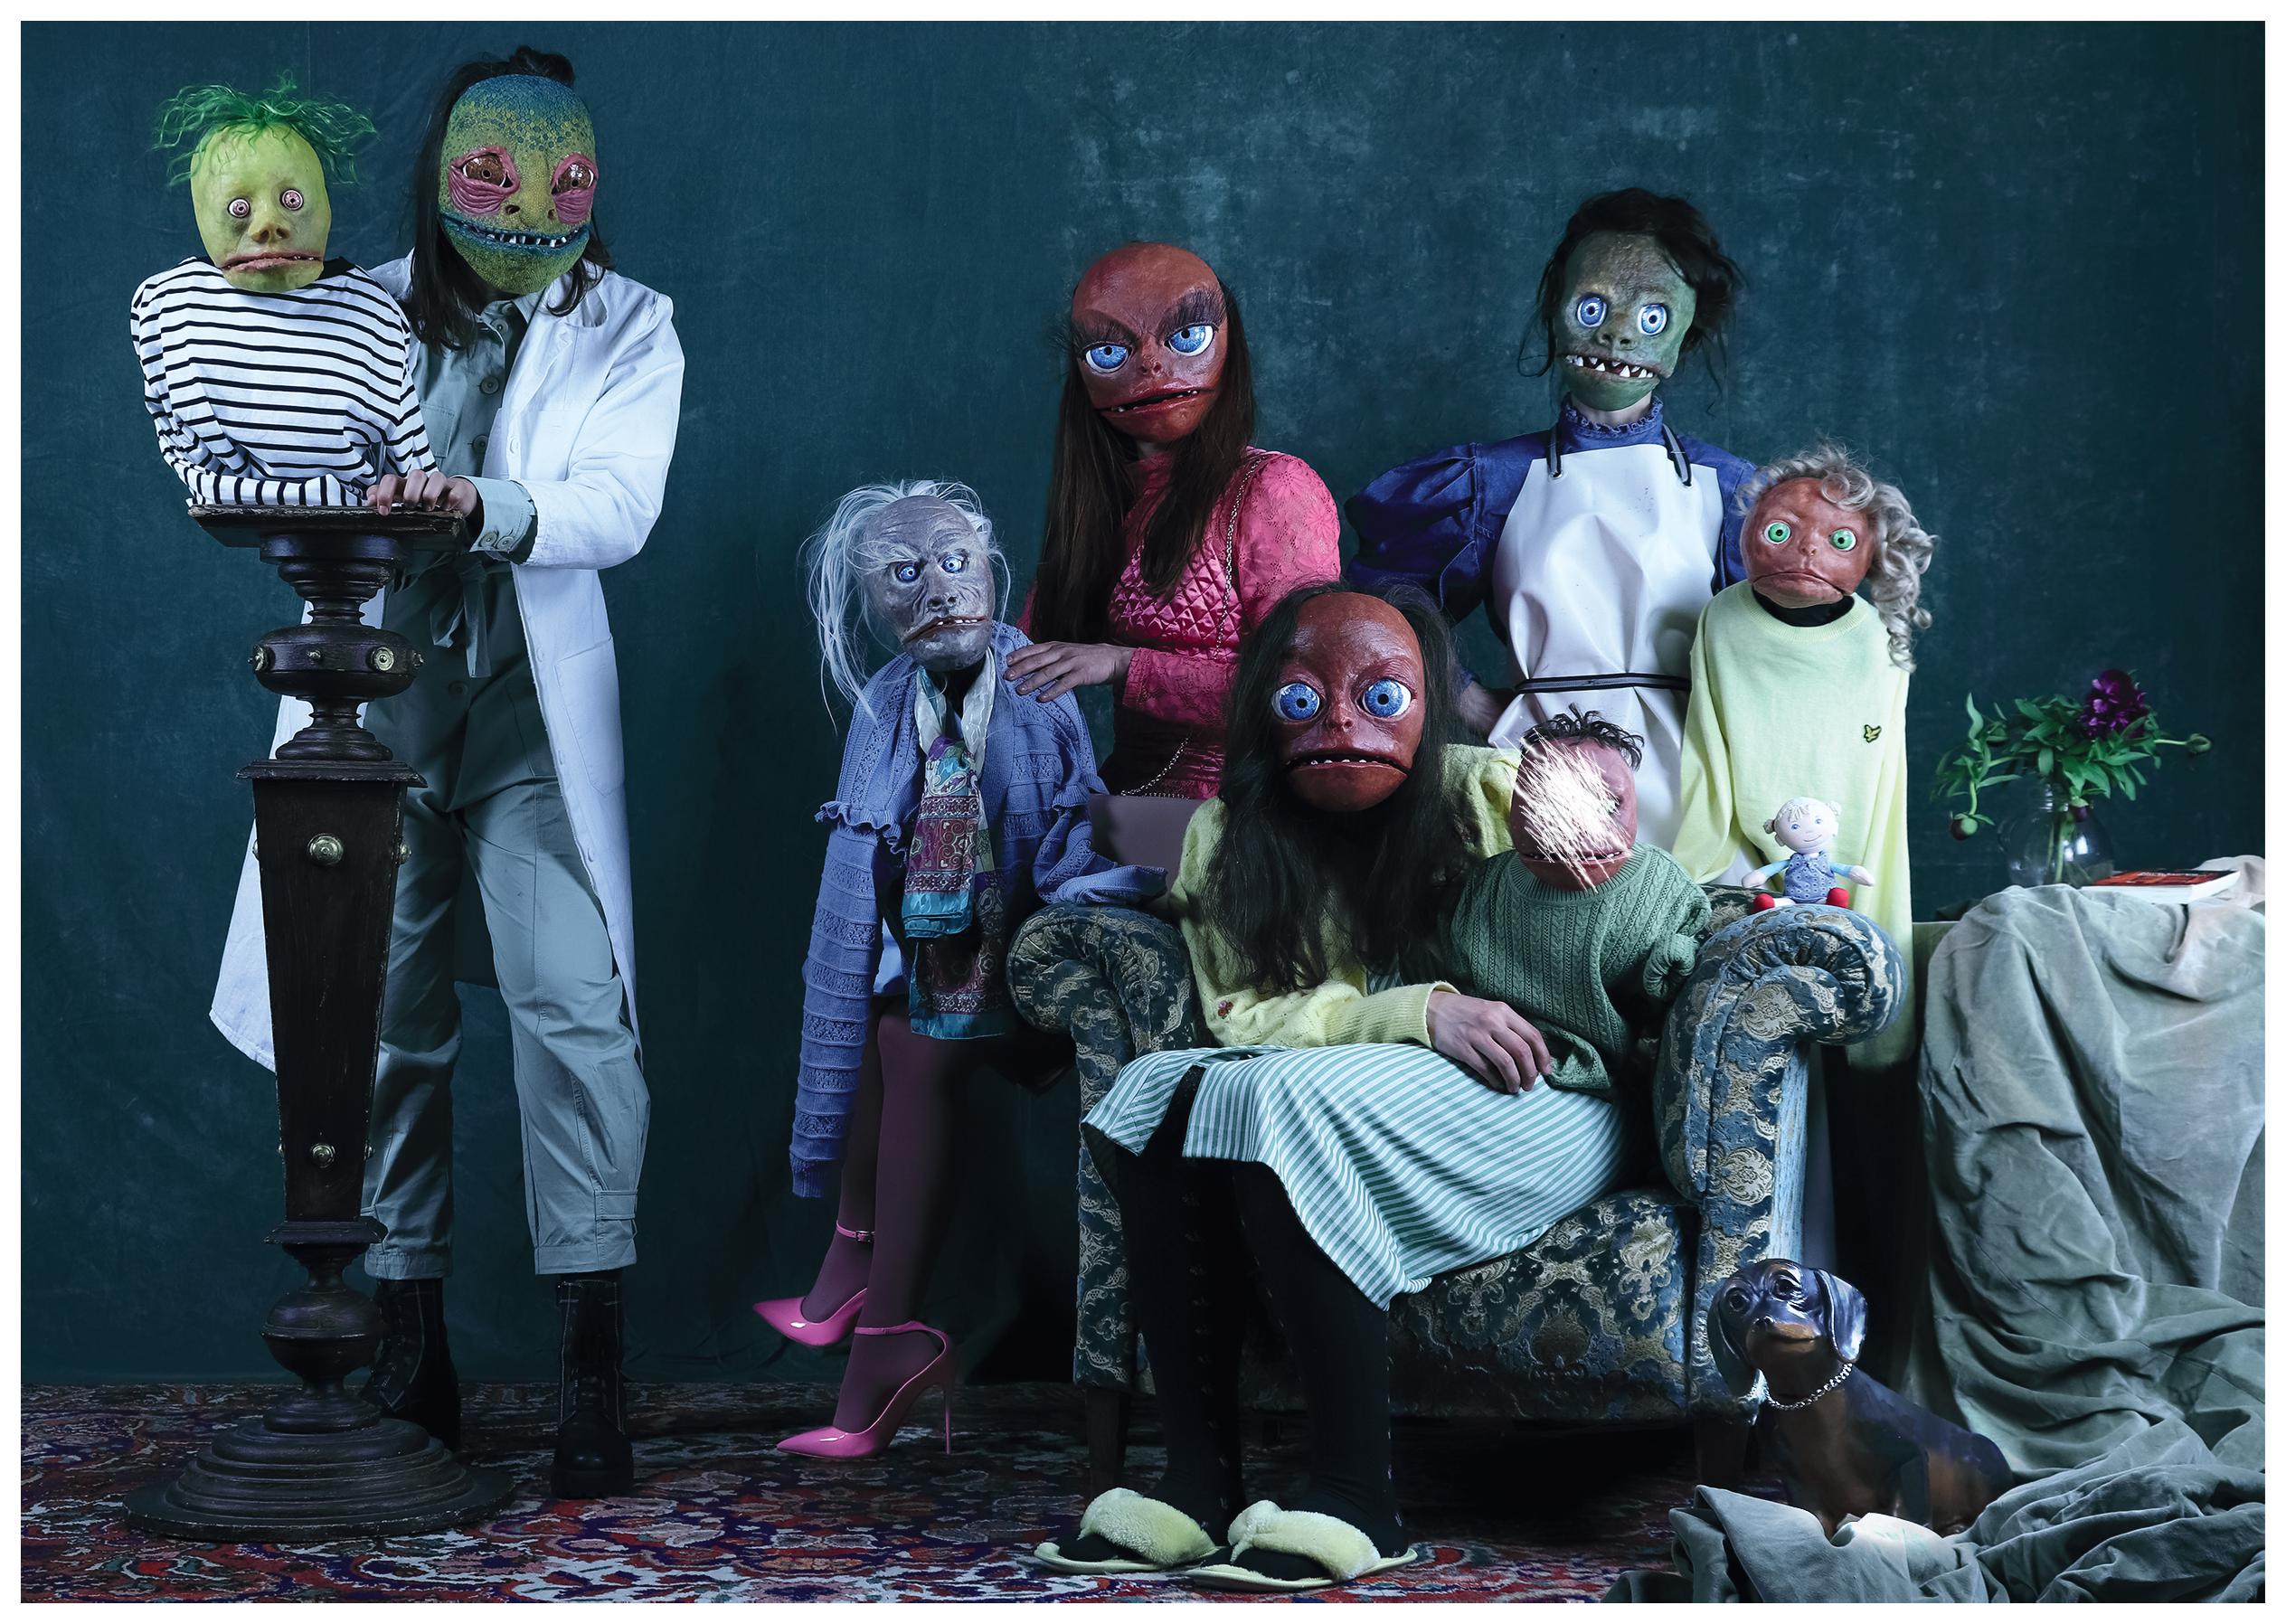 Gruppenbild der Figuren von Creatures Hill: Vier Schauspielerinnen tragen traurig bis grotesk wirkende Masken, die etwas an Reptilien erinnern, und je eine Klappmaulpuppe auf dem Arm. Auf dem Bild ist das Gesicht einer der Puppen weggekratzt.